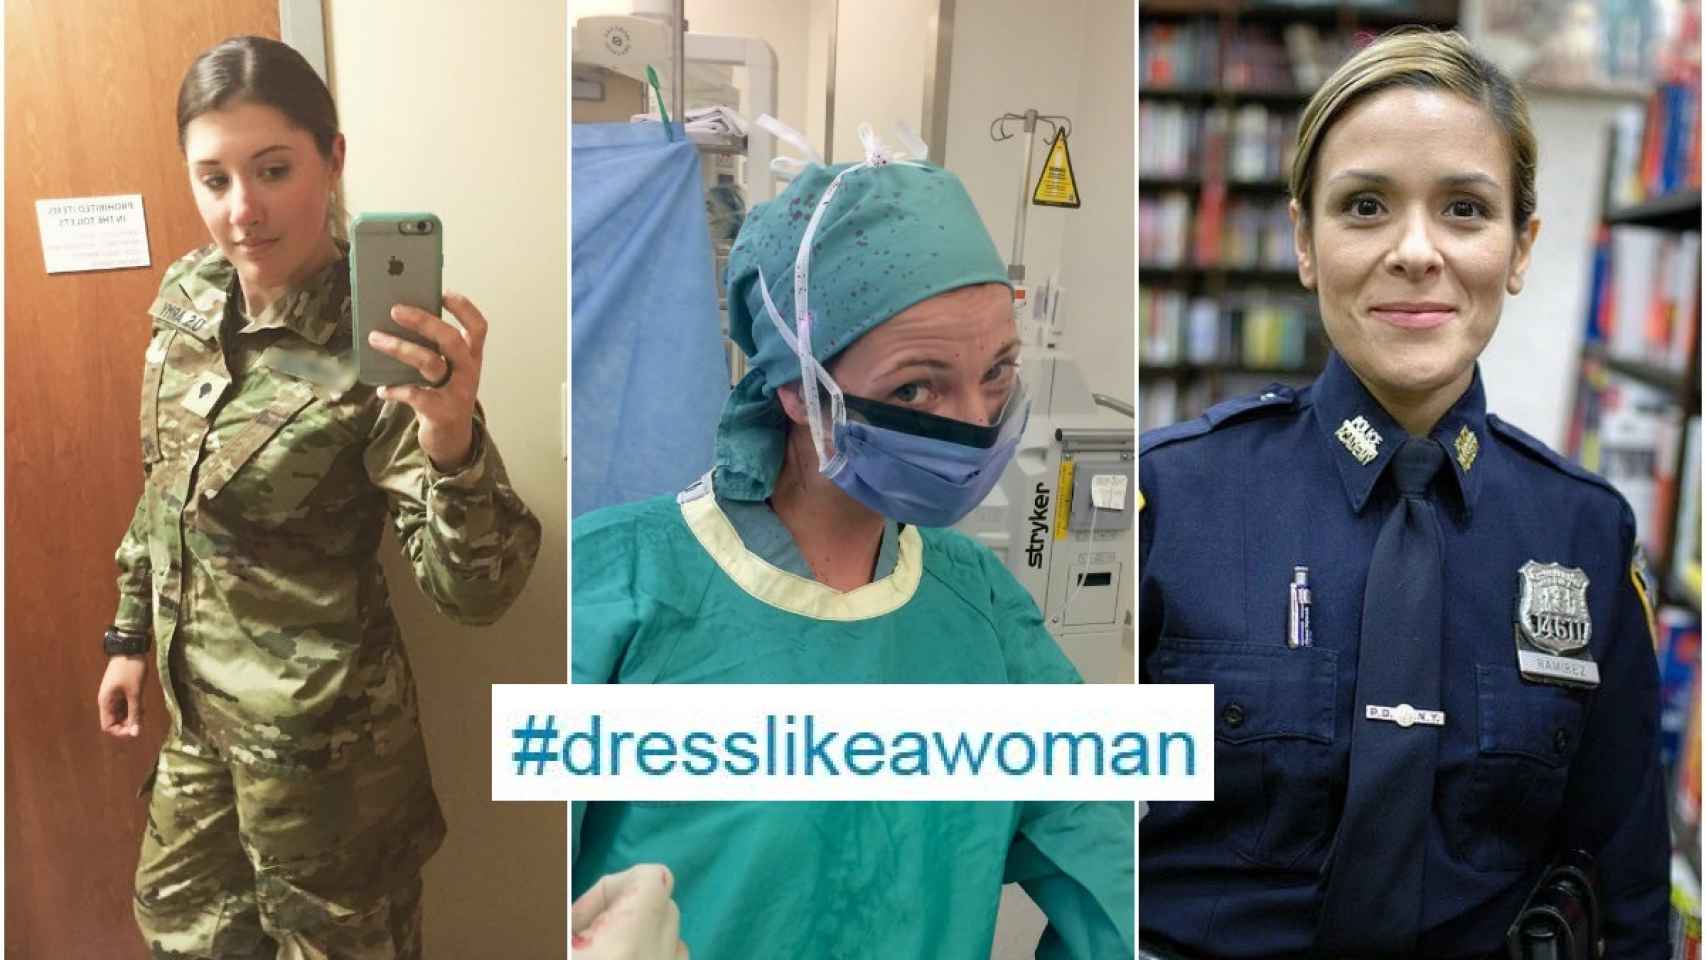 Decenas de usuarias dejan claro al presidente que vestirse como una mujer no es ir ceñida.